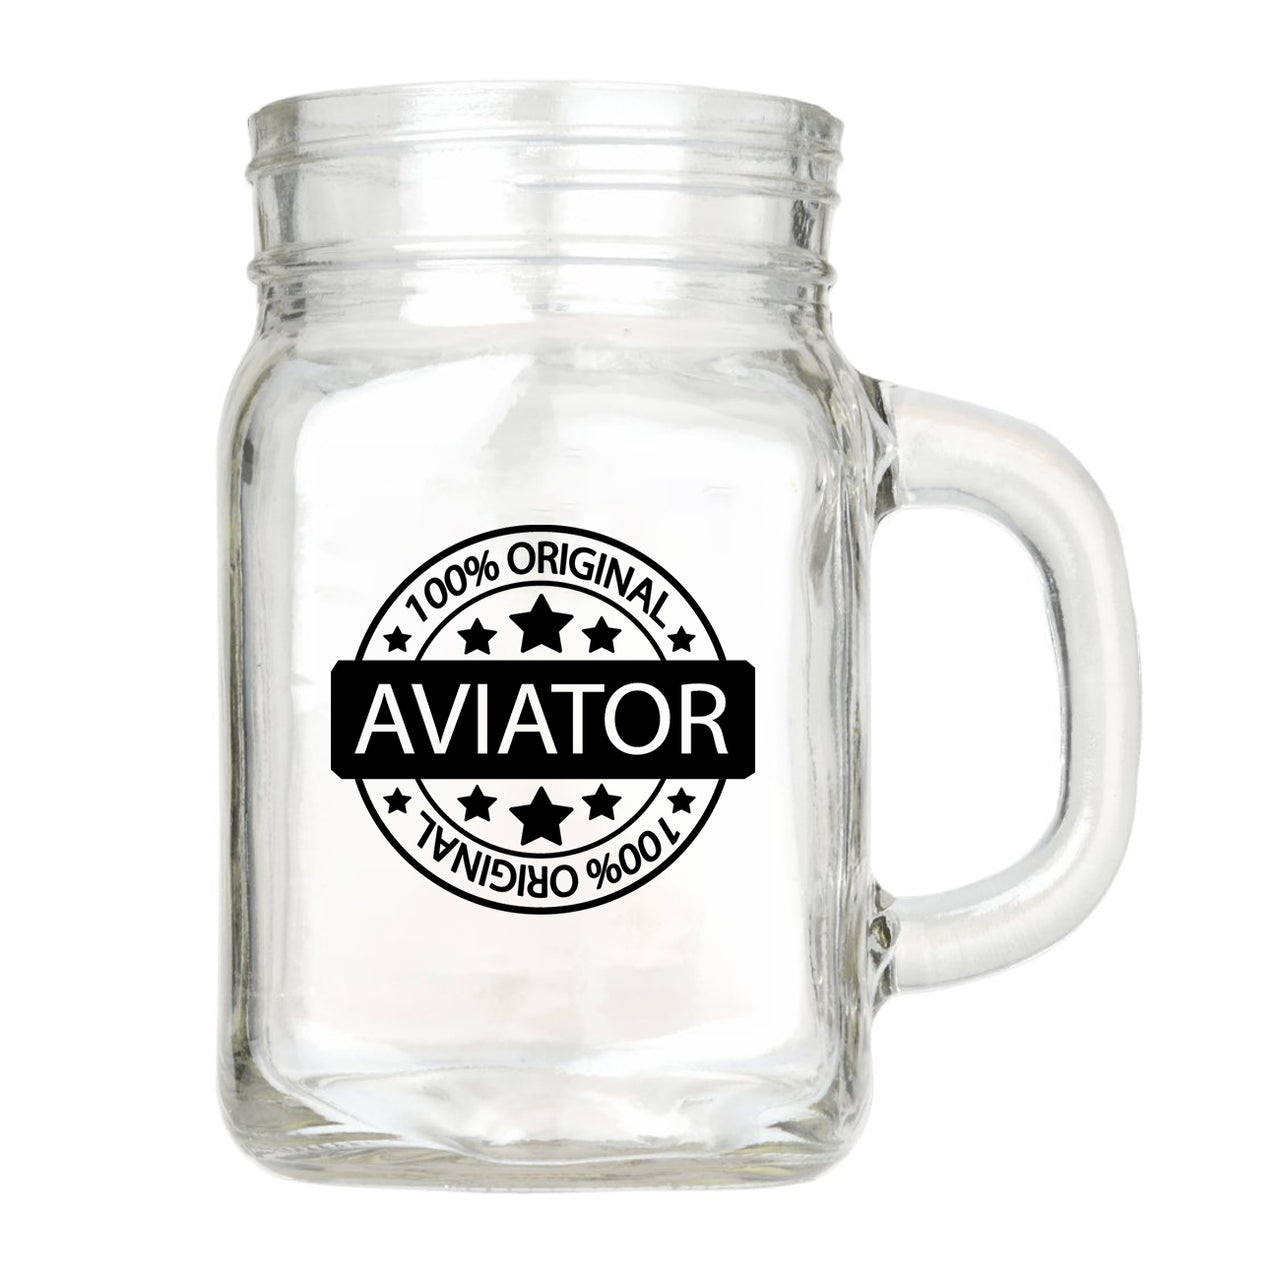 %100 Original Aviator Designed Cocktail Glasses